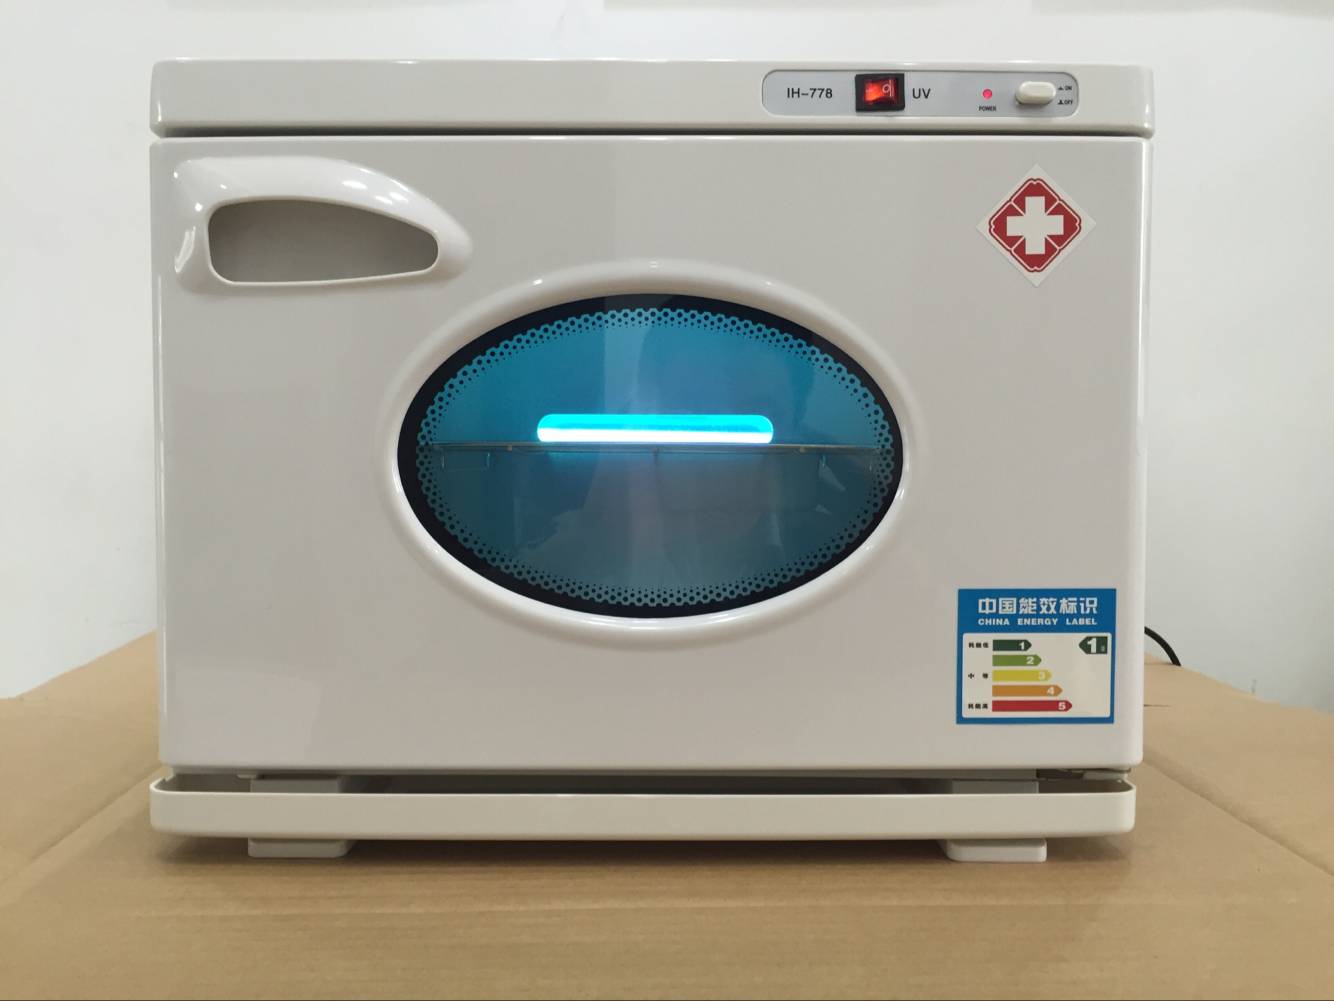 Armadio Disinfezione UV Per Apparecchiature Odontoiatriche Sterilizzatore Medico Asciugatura Elettrica 18L